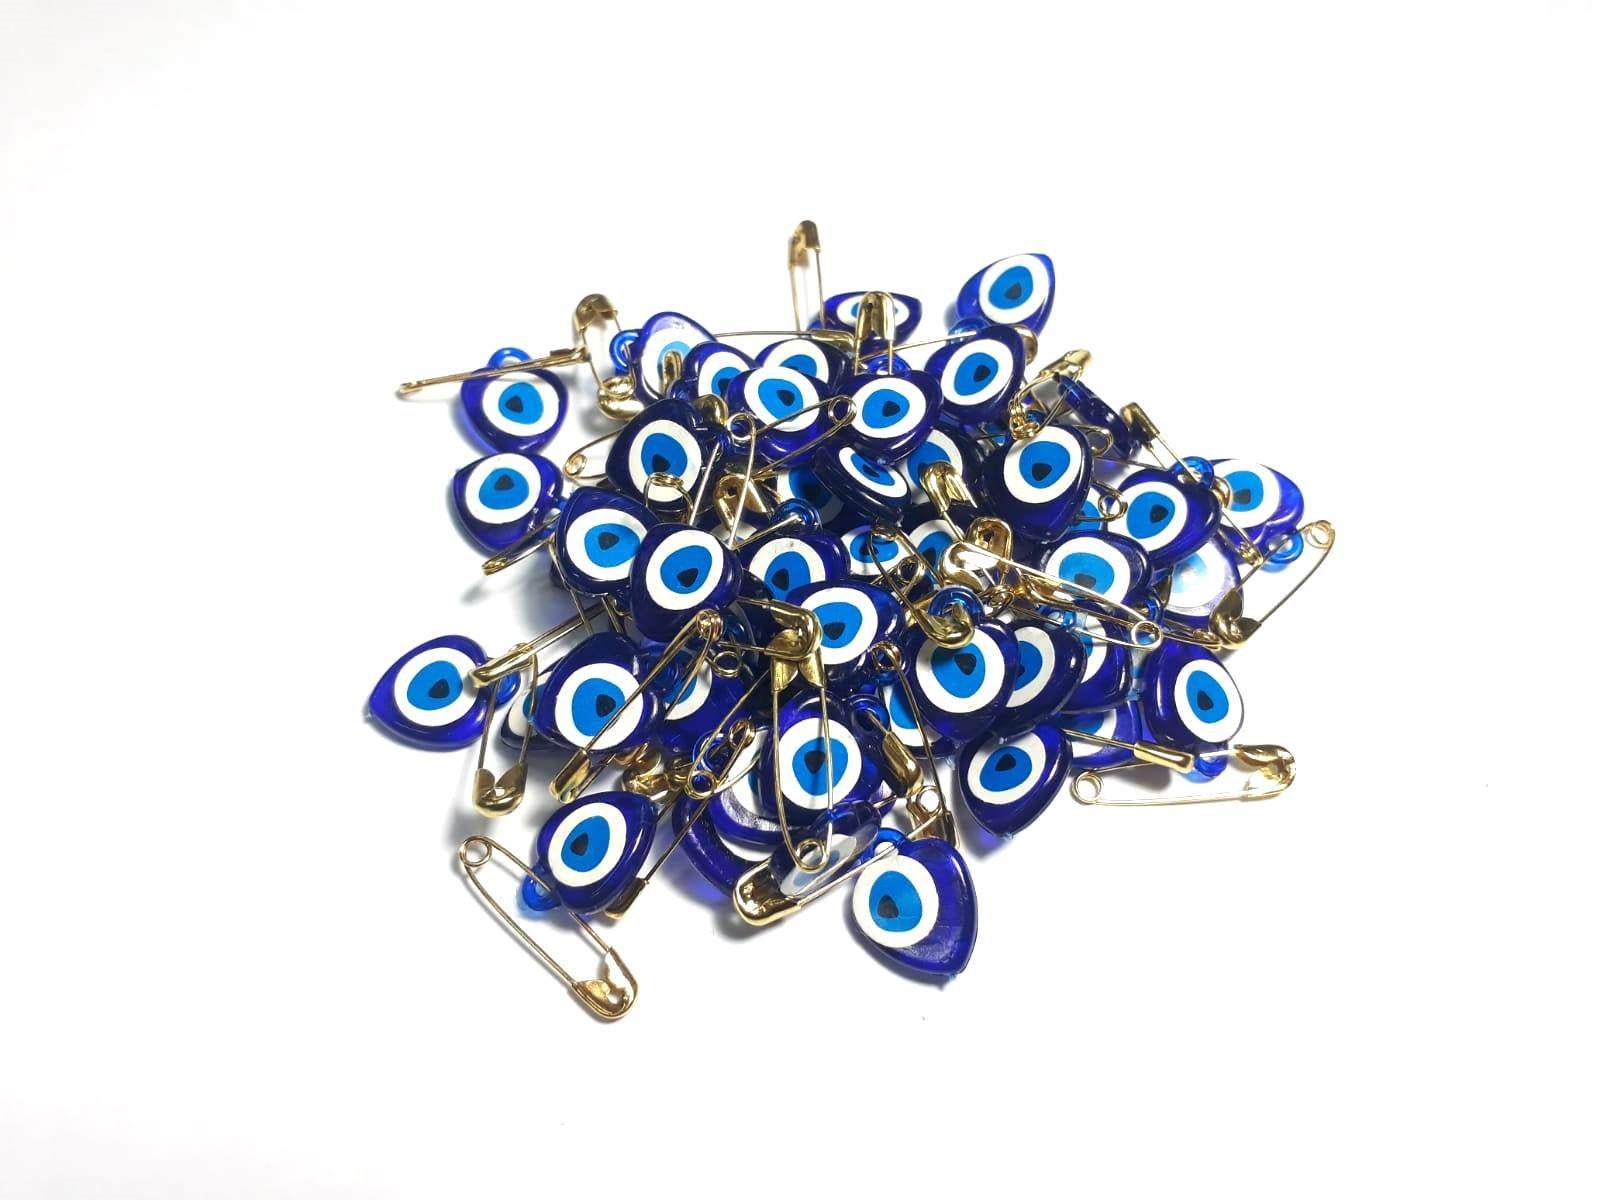 Türkische Nazar-Amulette (türkisches Auge), die im Herbst an einem